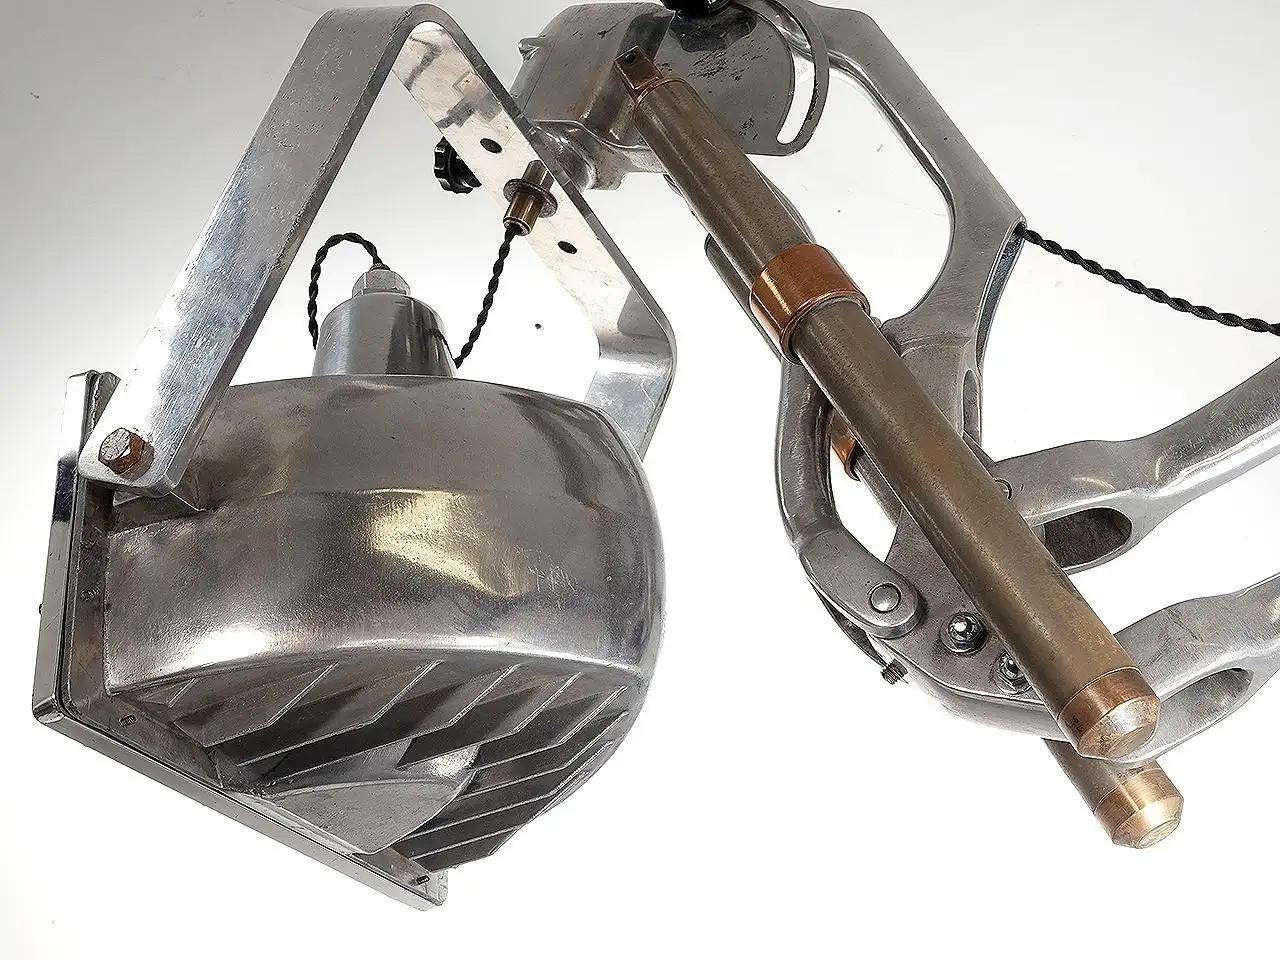 Cette lampe impressionnante a d'abord été un appareil à rayons X des années 1930. La tête est un spot lumineux en aluminium que nous avons monté sur le bras robuste. Le bras articulé et la lampe ont été polis pour obtenir une finition brillante. Le